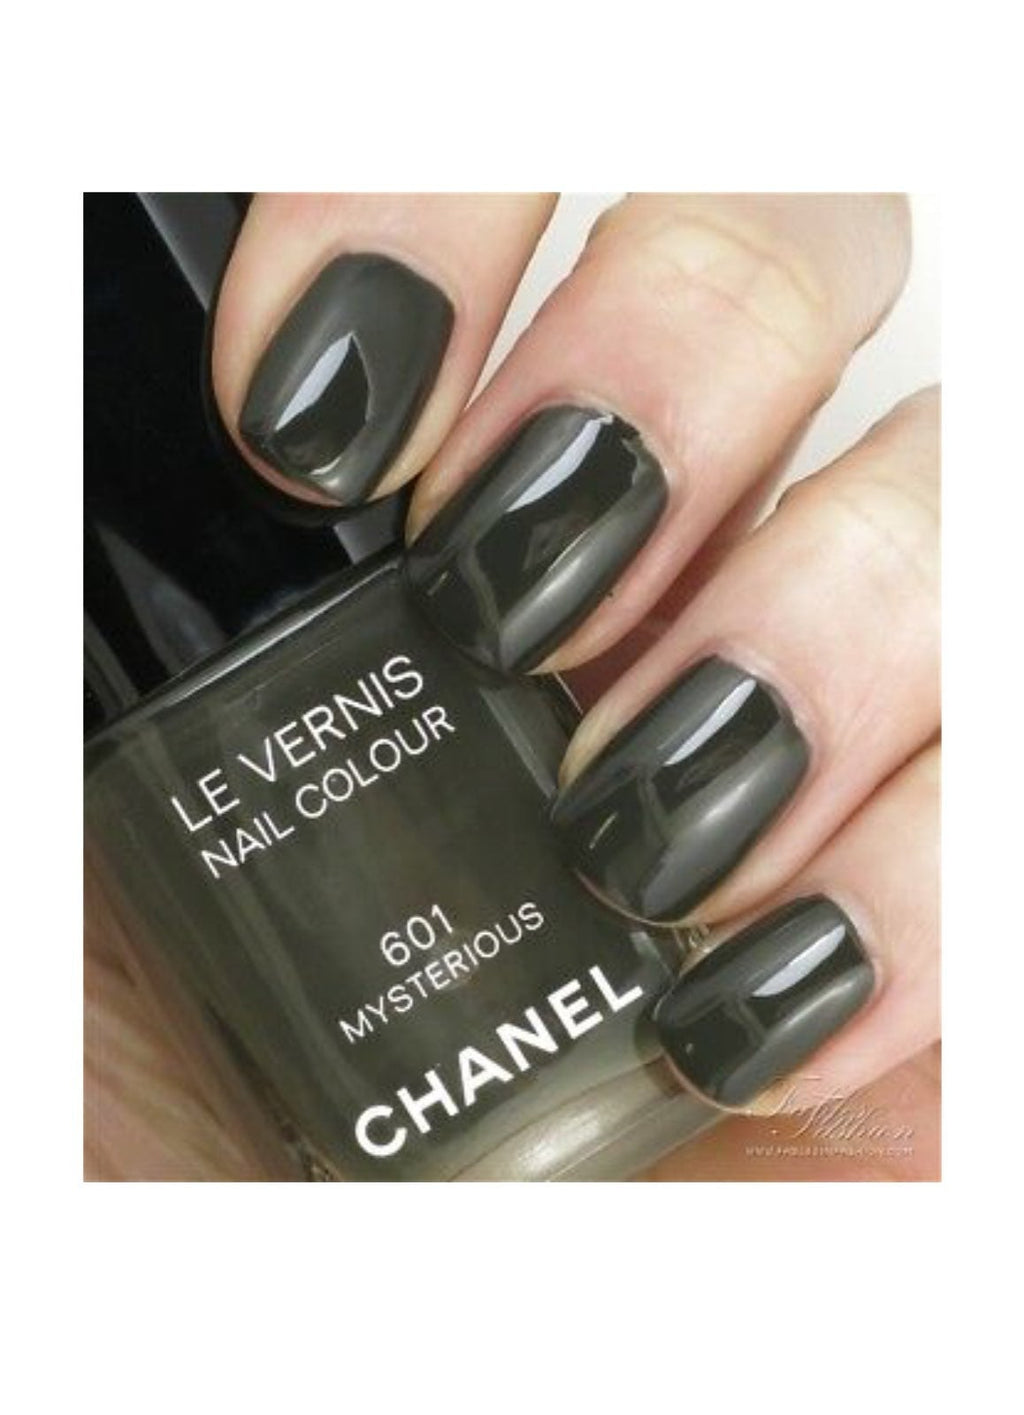 CHANEL+Le+Vernis+Longwear+Nail+Colour+538+Gris+Obscure+13ml+Polish